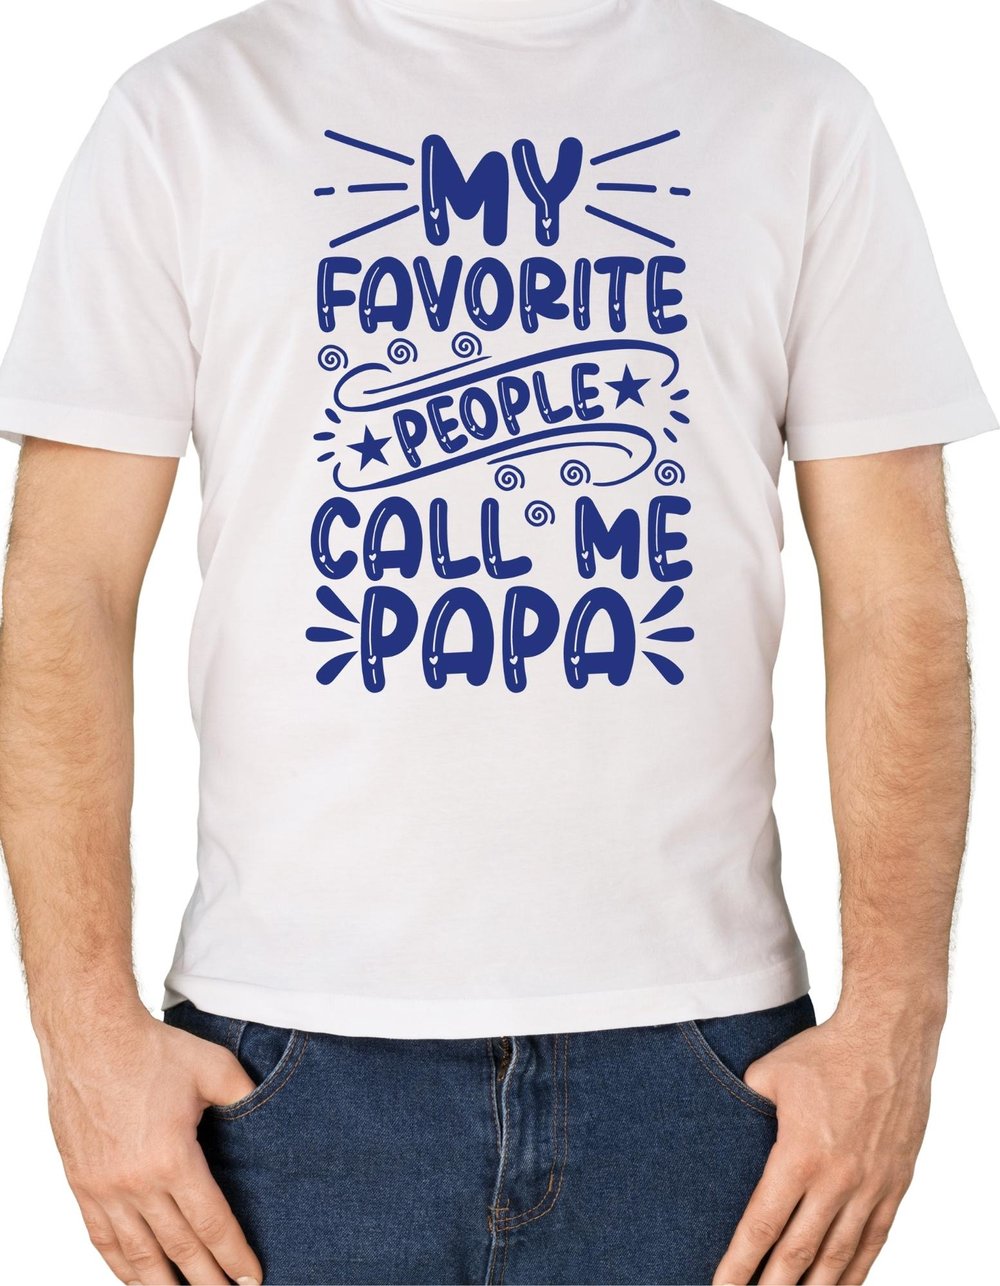 Favorite People Me T-shirt — debbiewendell.com